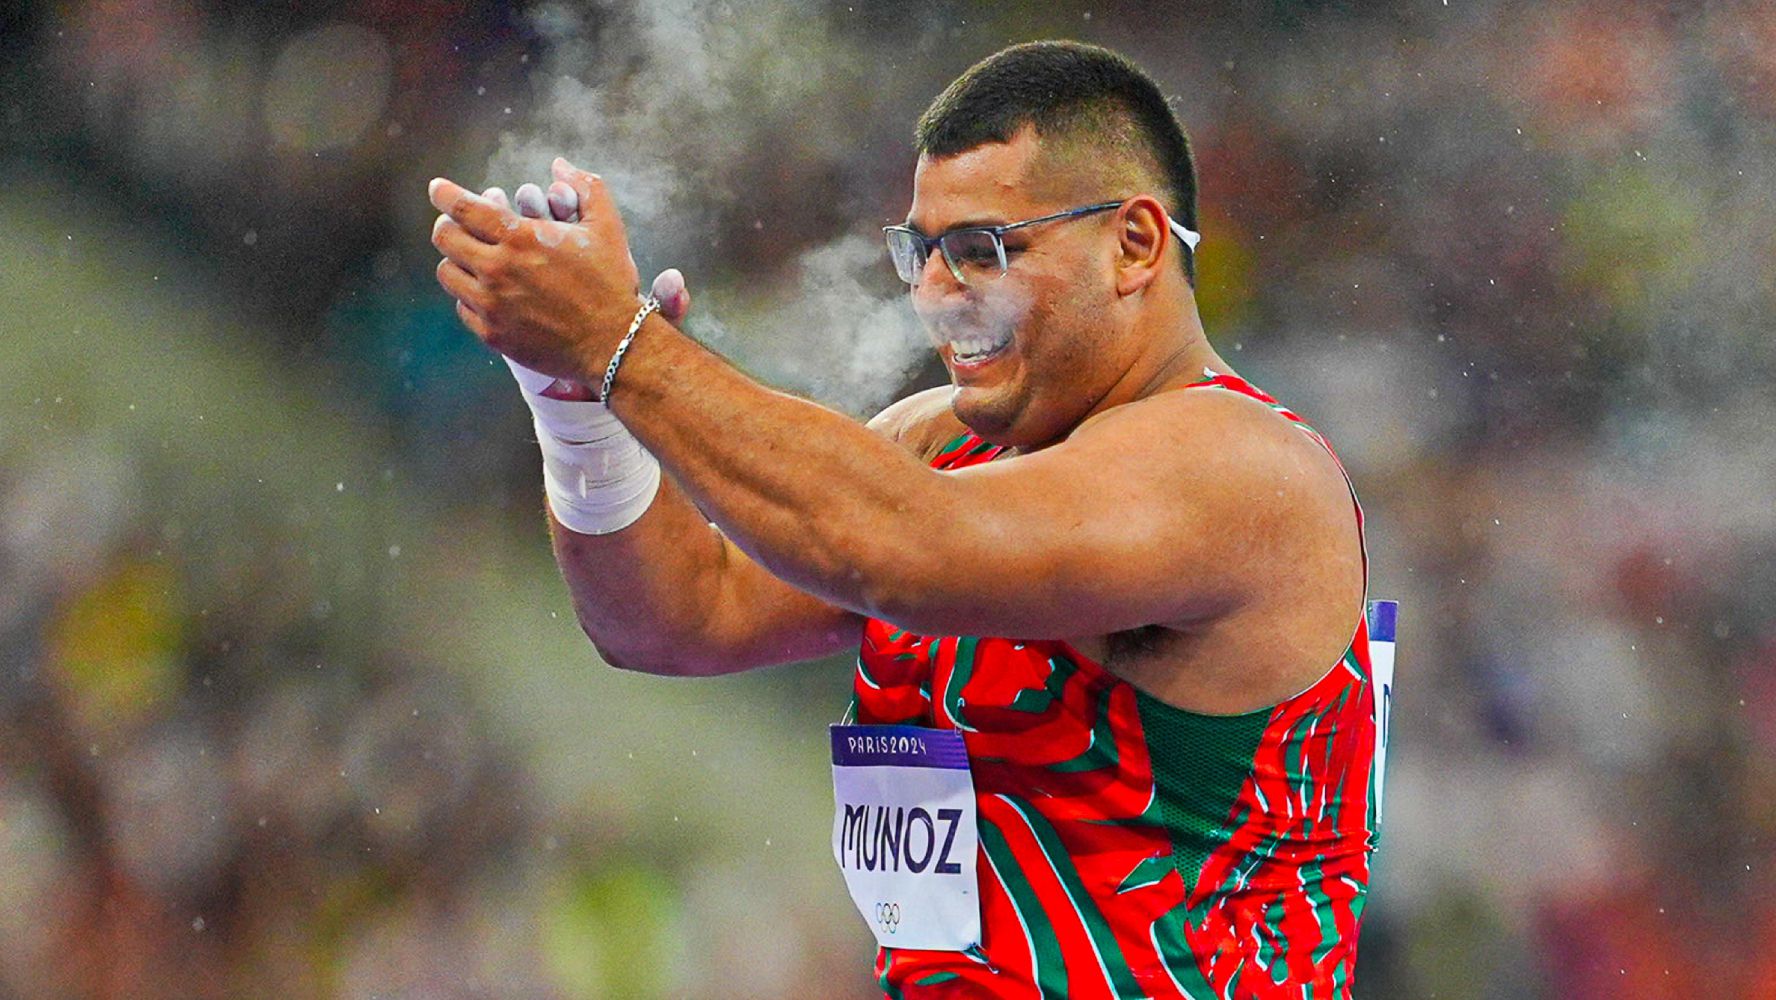 Uziel Muñoz, el atleta que llegó a París 2024 motivado por su hermano que murió: ‘Se lo prometí’